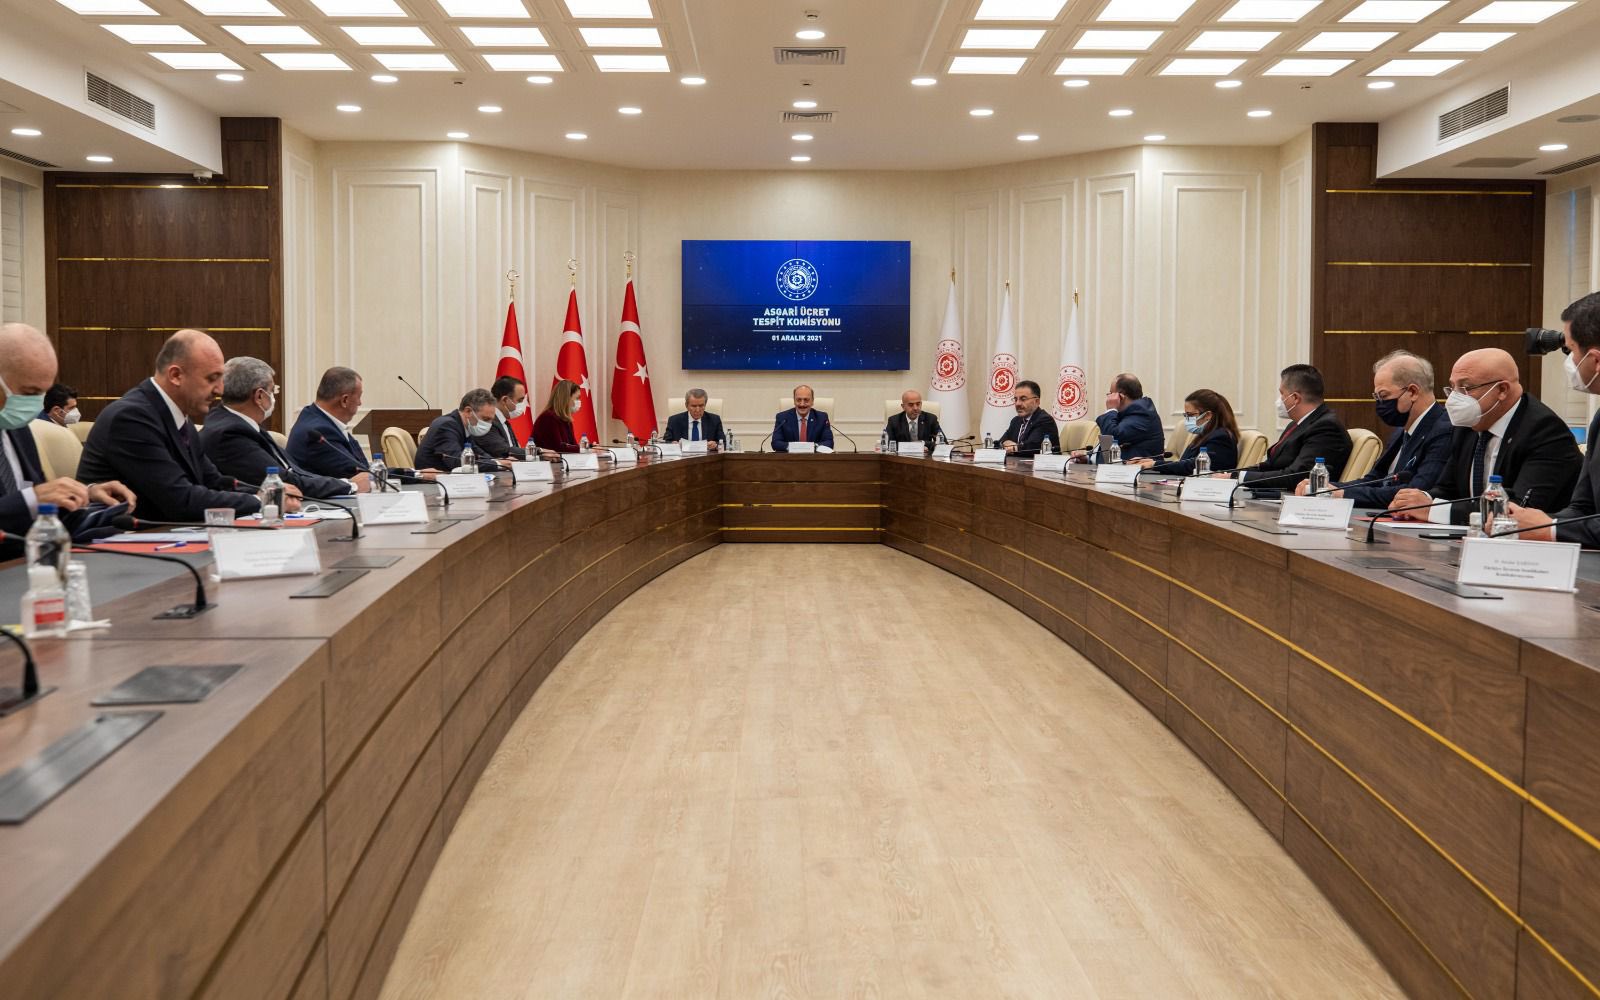 Asgari Ücret Tespit Komisyonu, Bakan Bilgin Başkanlığında İlk Toplantısını Yaptı